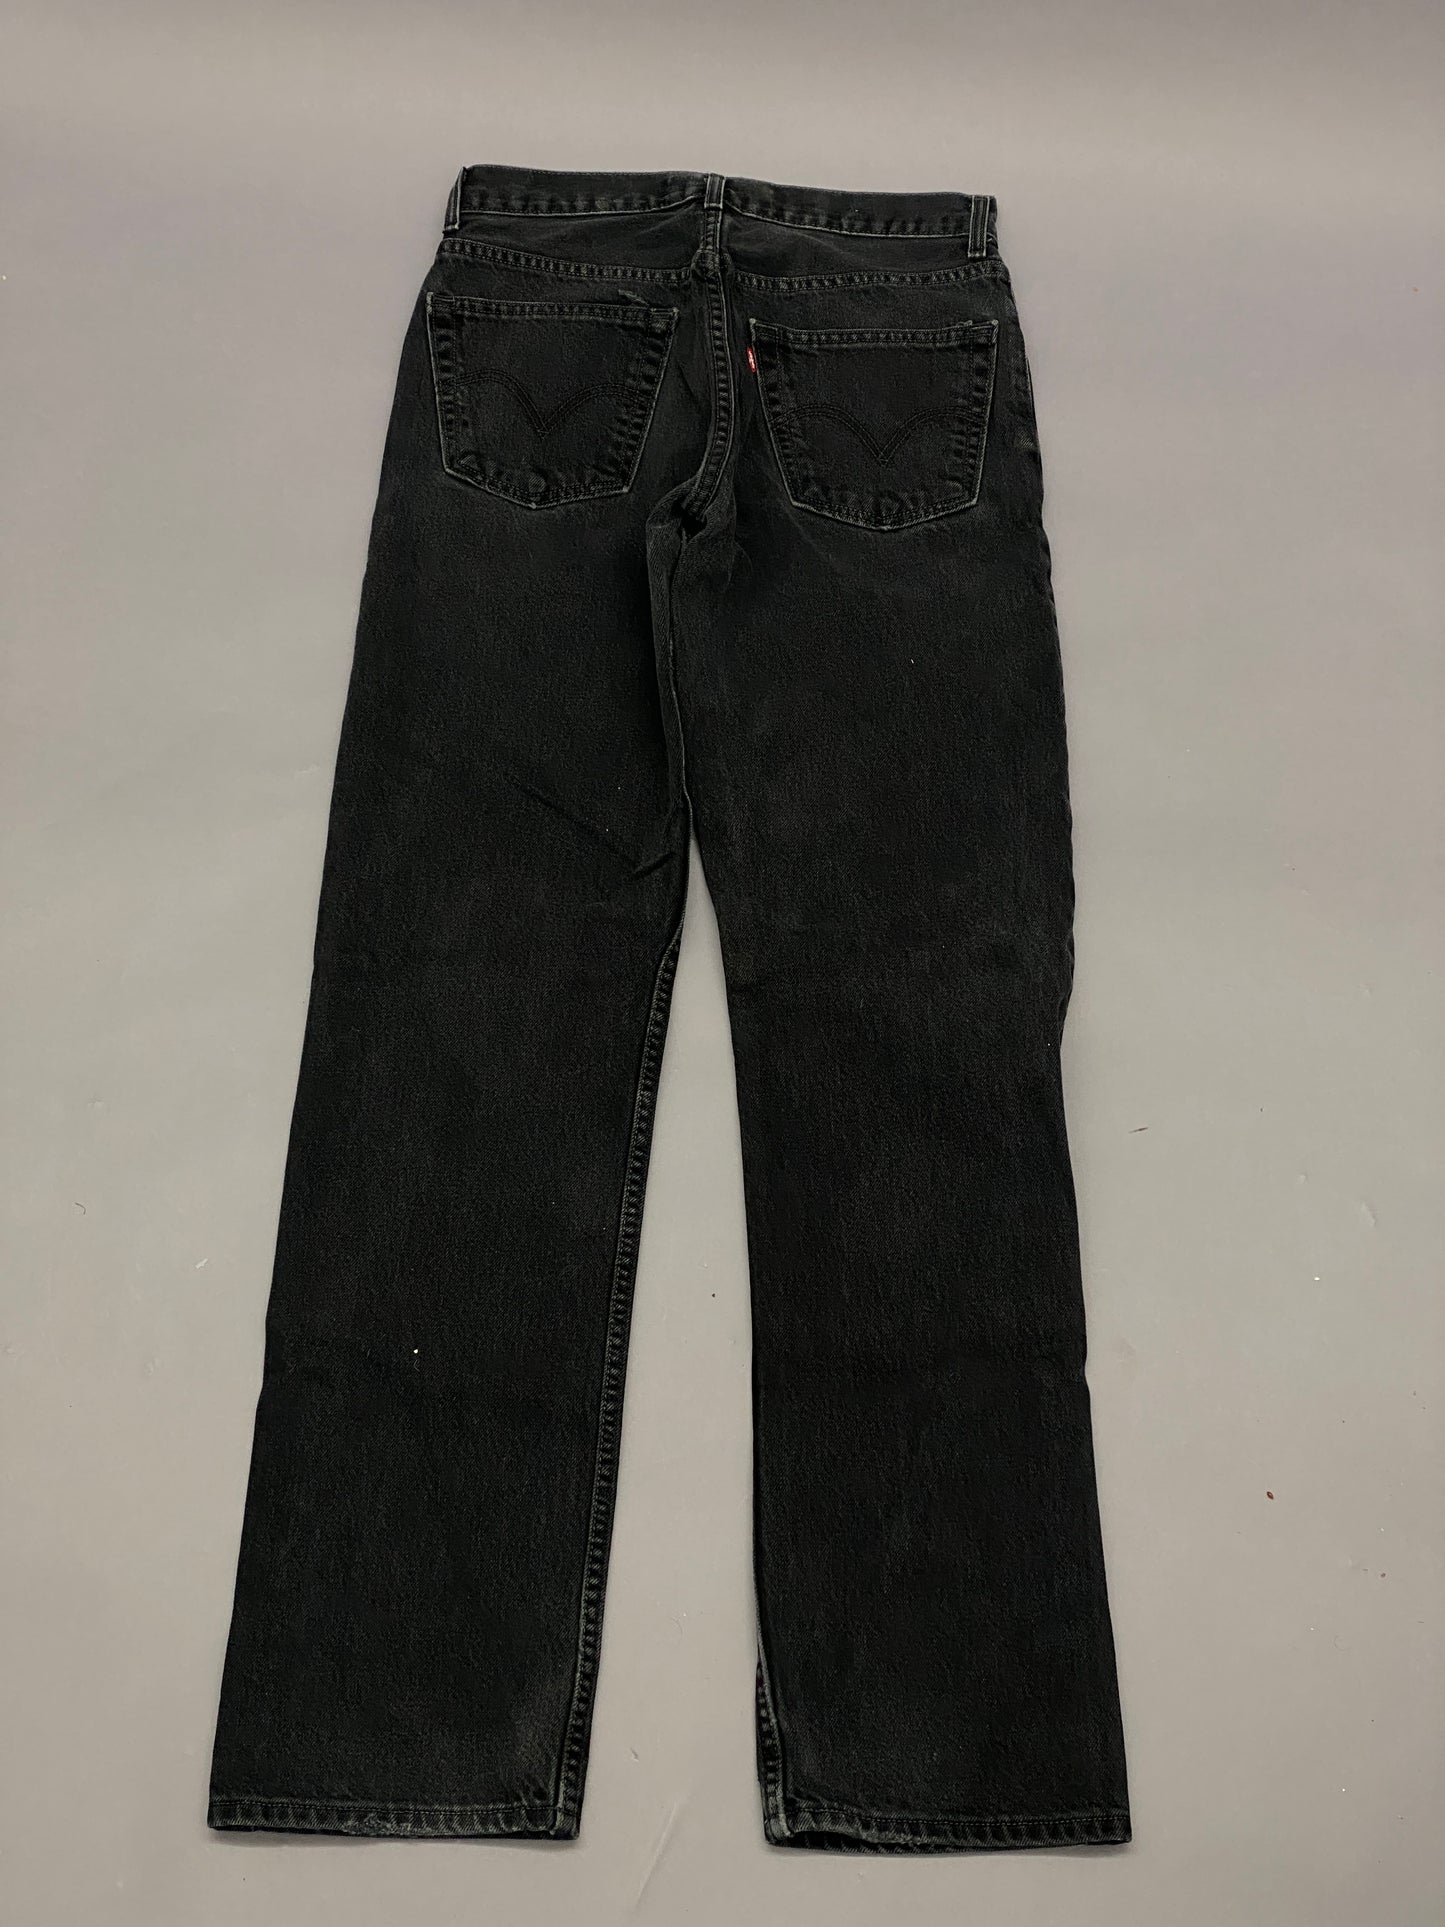 Levis 505 Vintage Jeans - 32x36